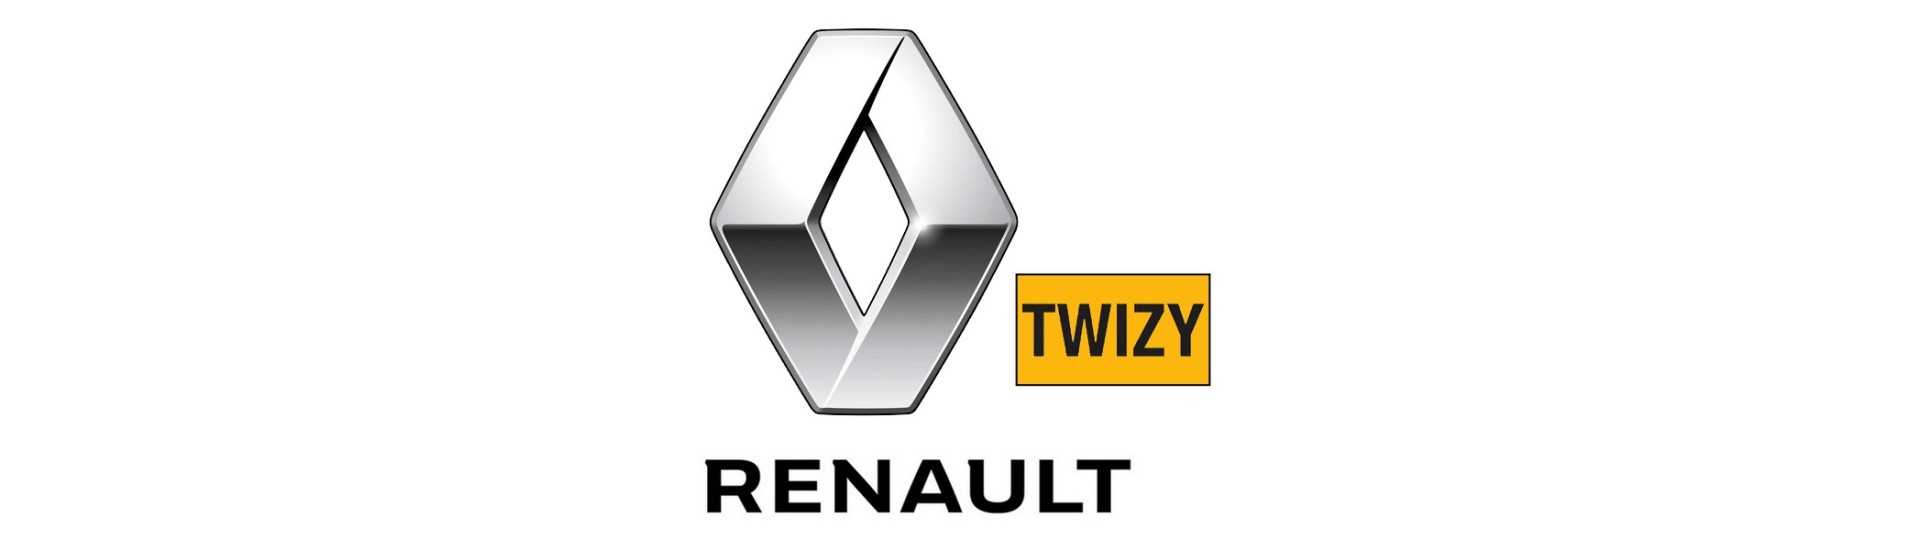 Vidro de Hayon ao melhor preço para o carro sem uma permissão Renault Twizy